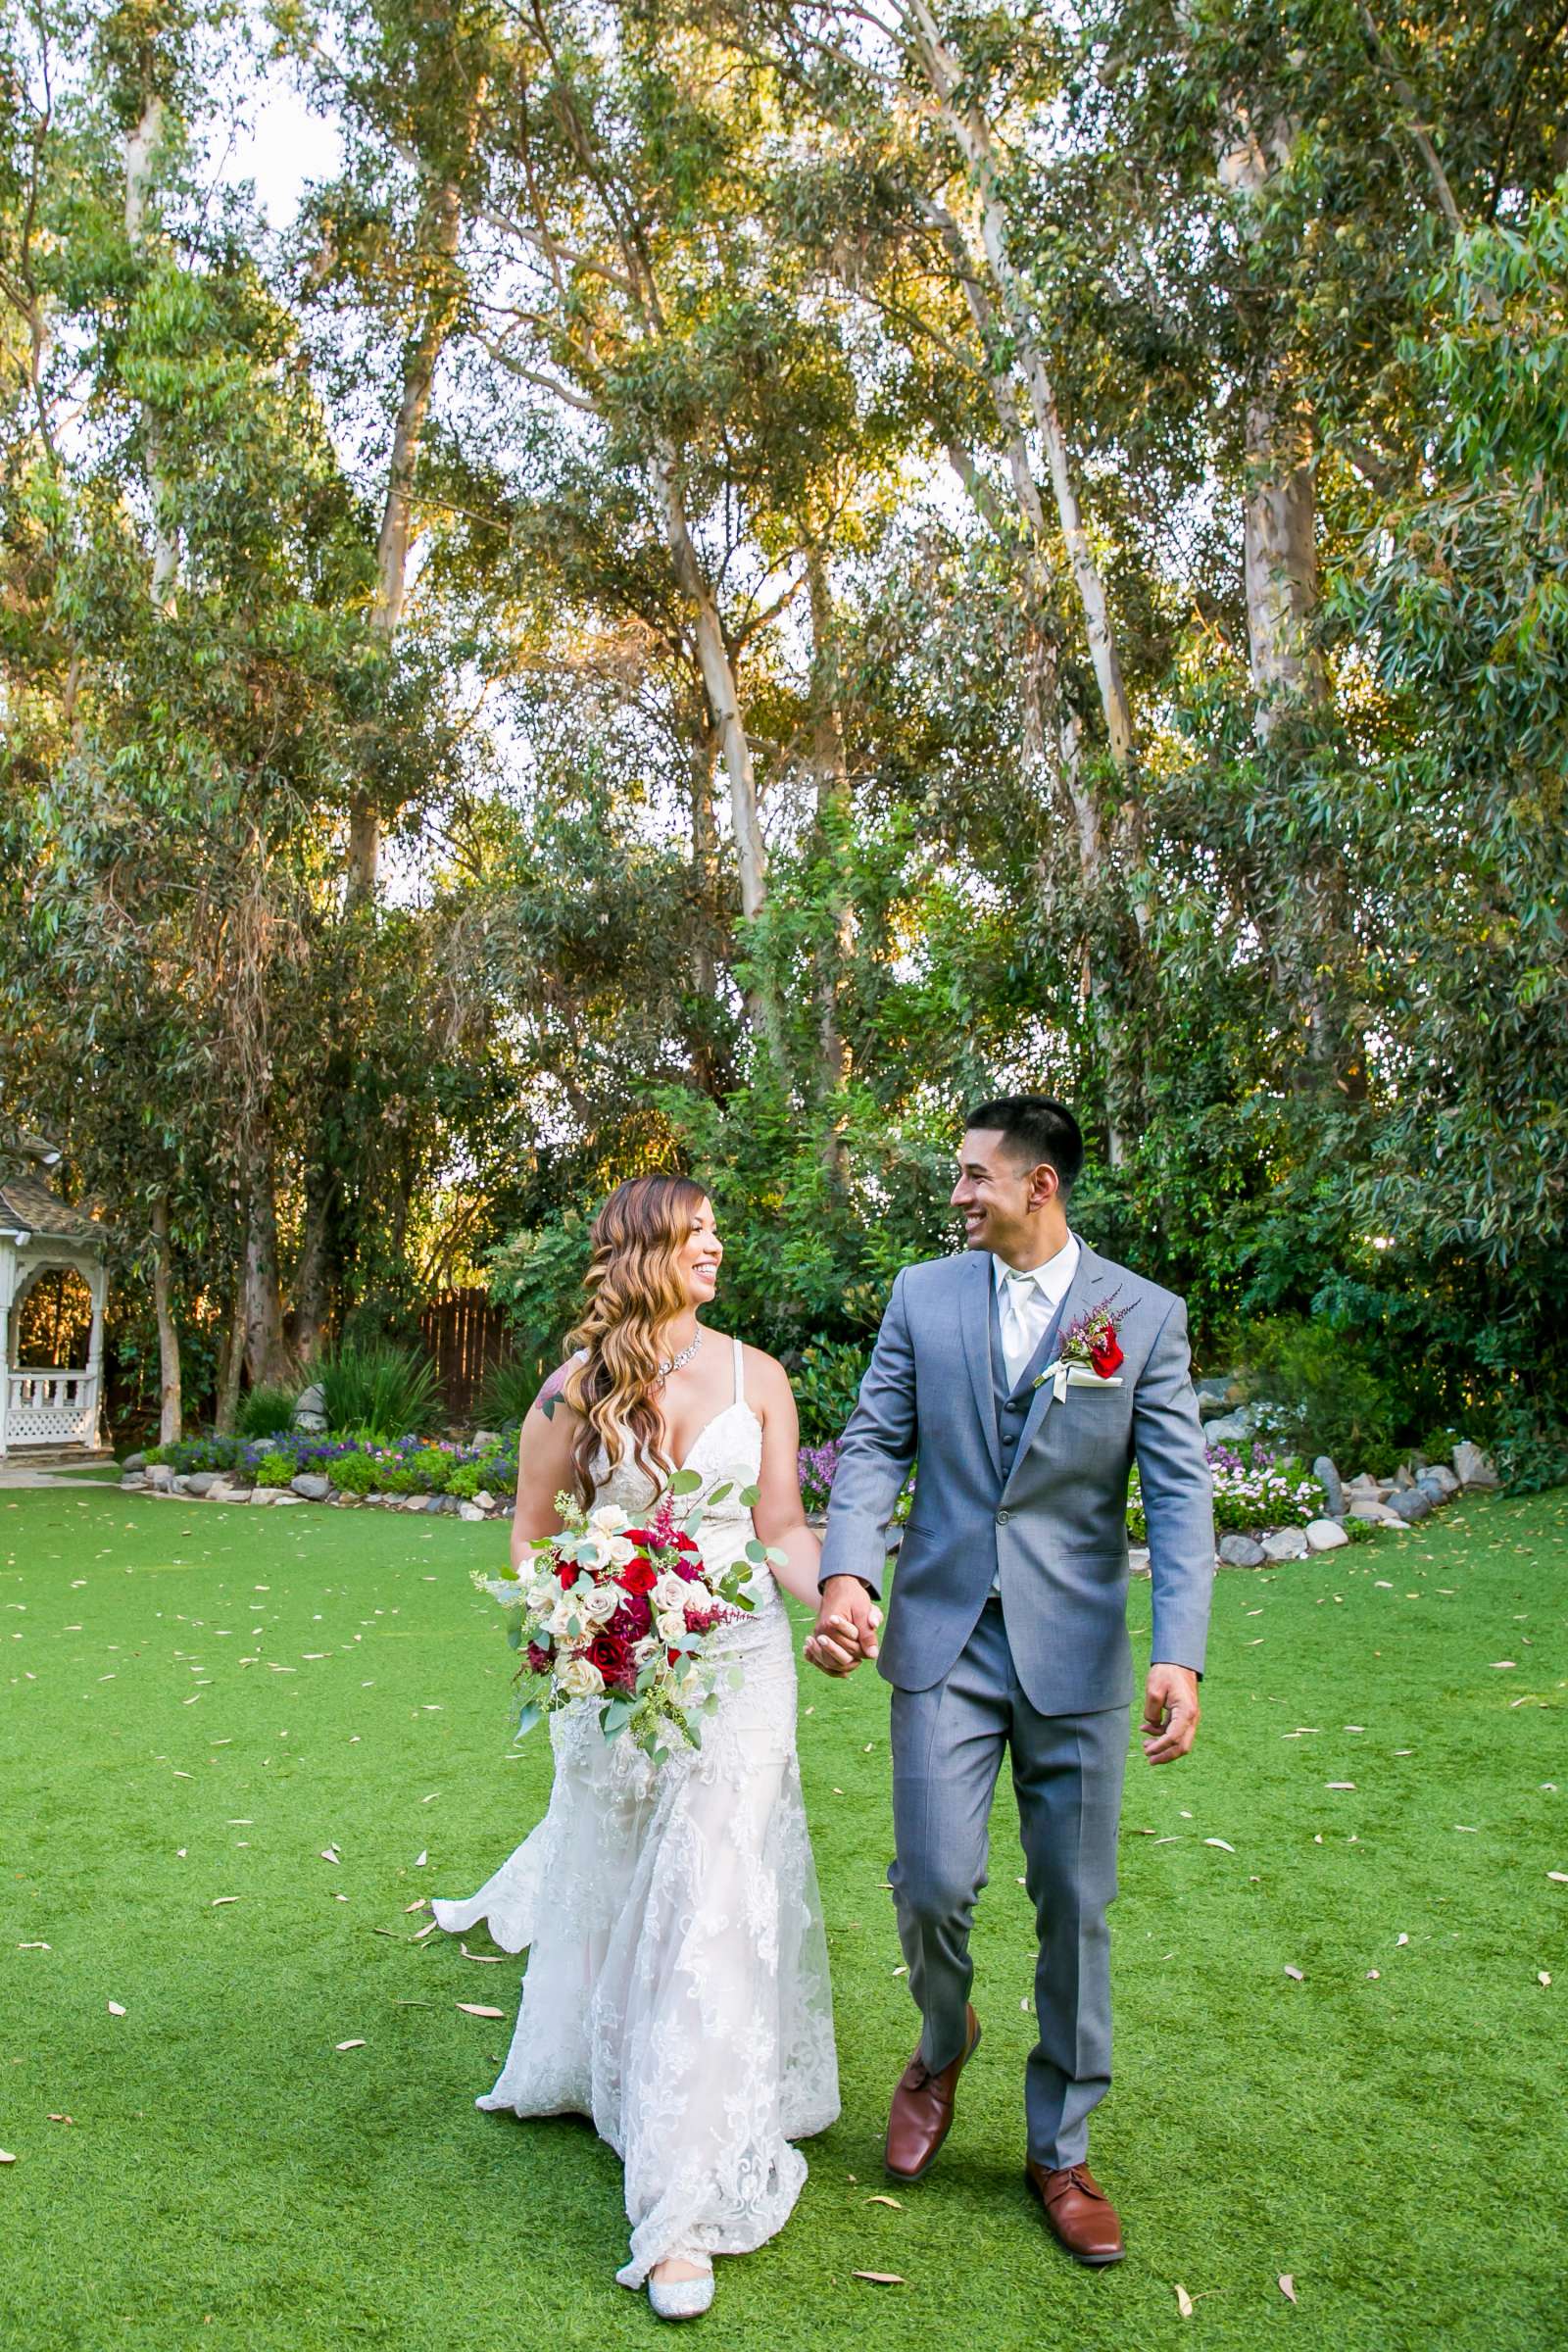 Twin Oaks House & Gardens Wedding Estate Wedding, Merrilynn and Trey Wedding Photo #18 by True Photography